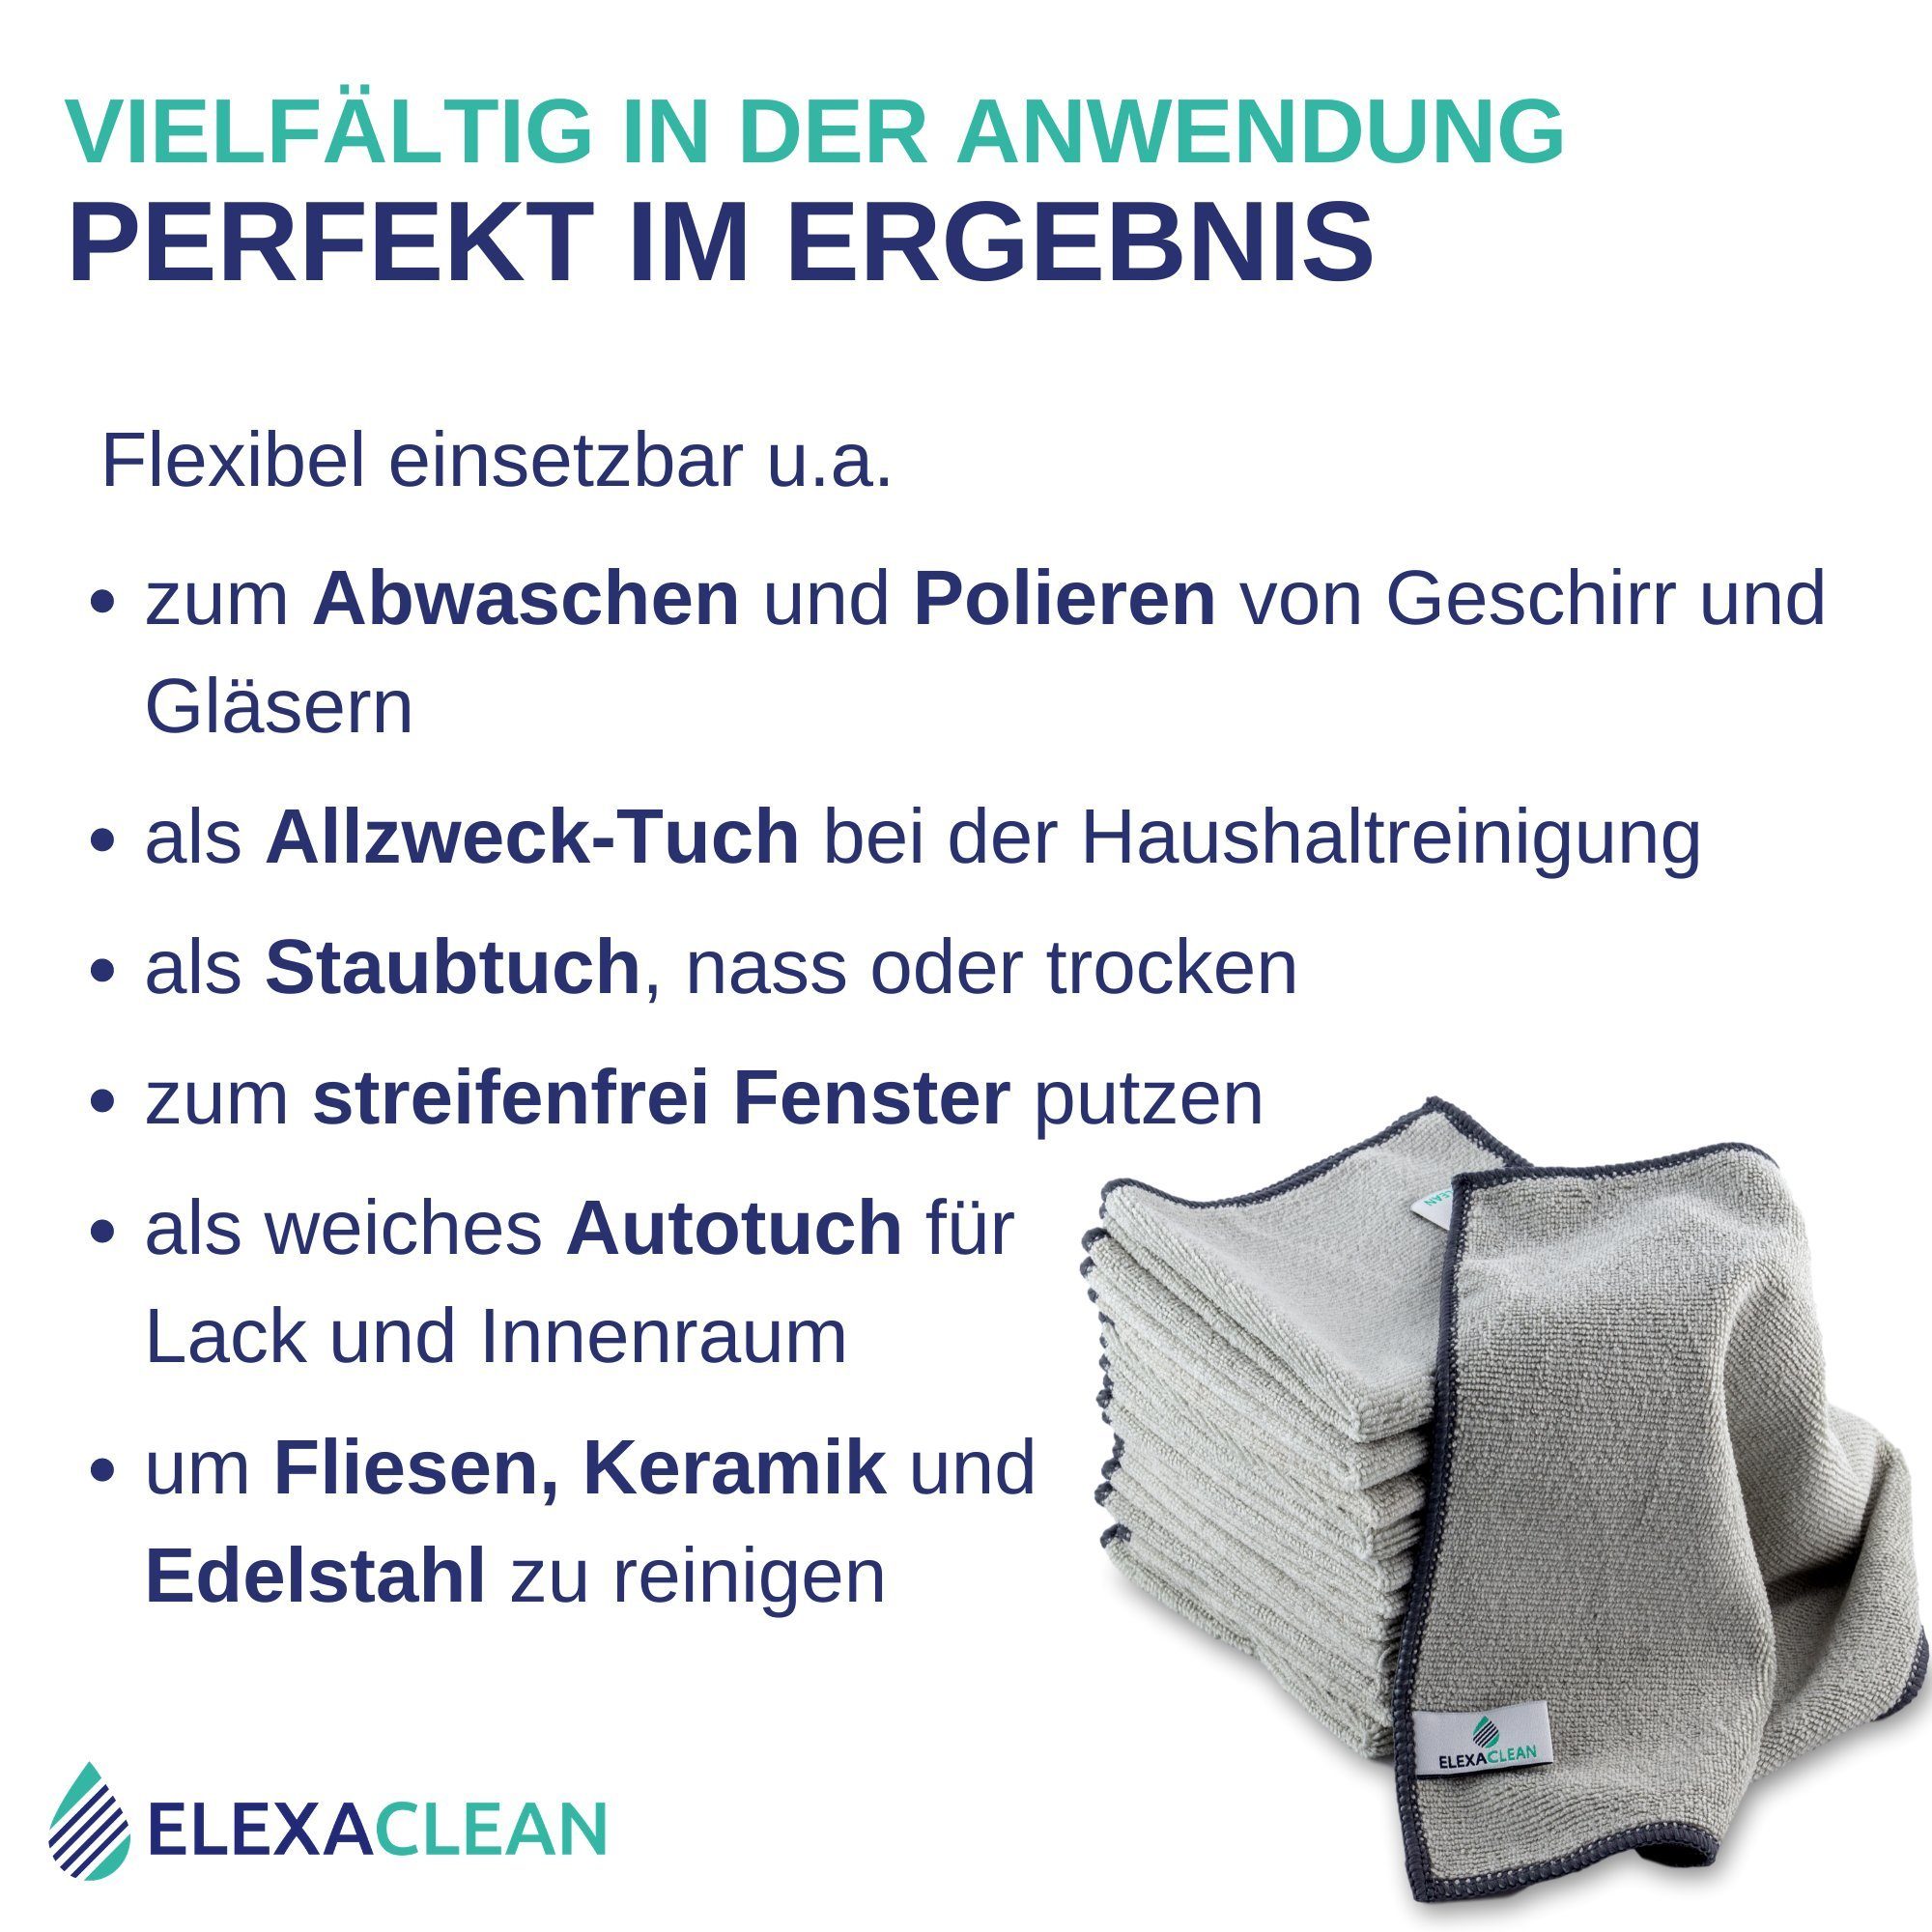 ELEXACLEAN Universal Reinigungstücher Mikrofasertuch (Set, 12-tlg., saugfähig) streifenfrei, Grau cm, 30x30 fusselfrei